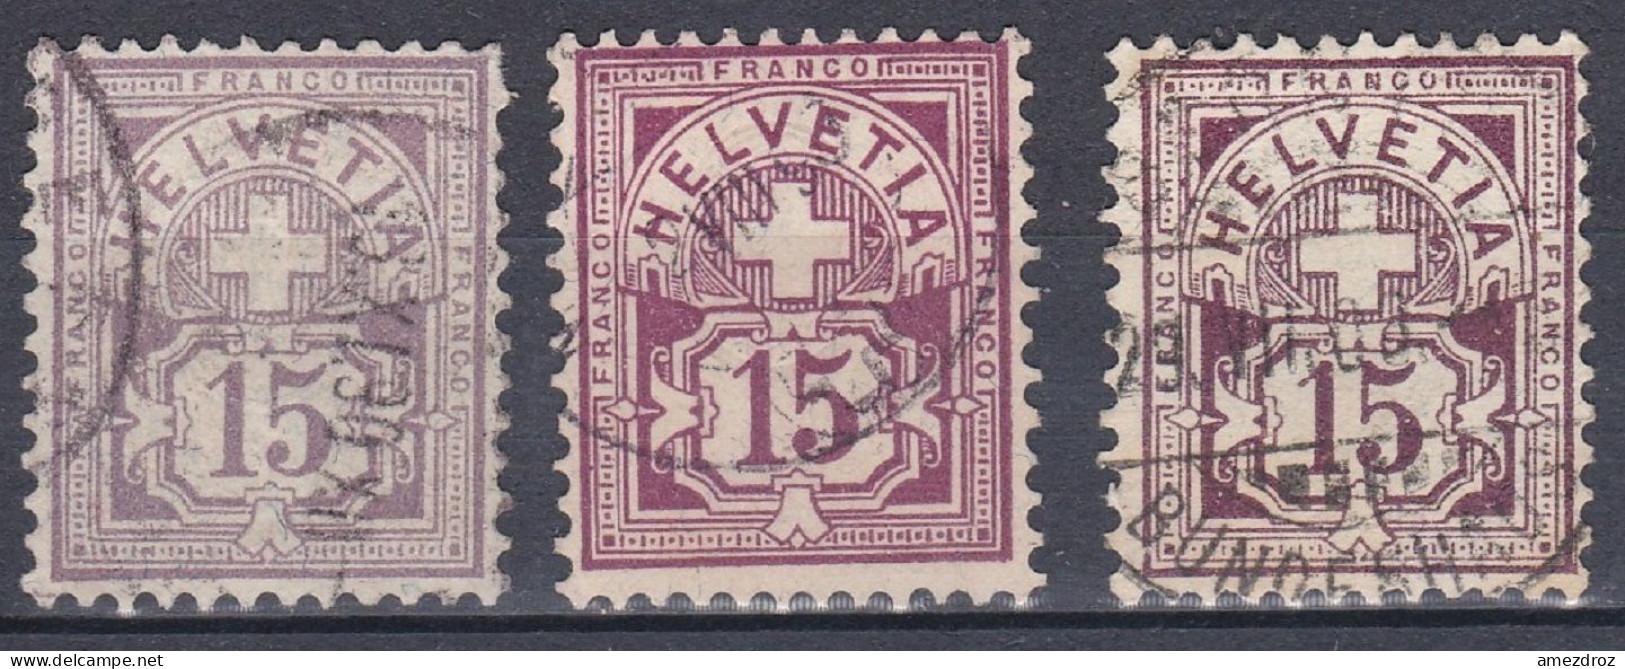 Suisse 1882 N° 70 70a & 70b Croix Et Bouclier (J18) - Oblitérés